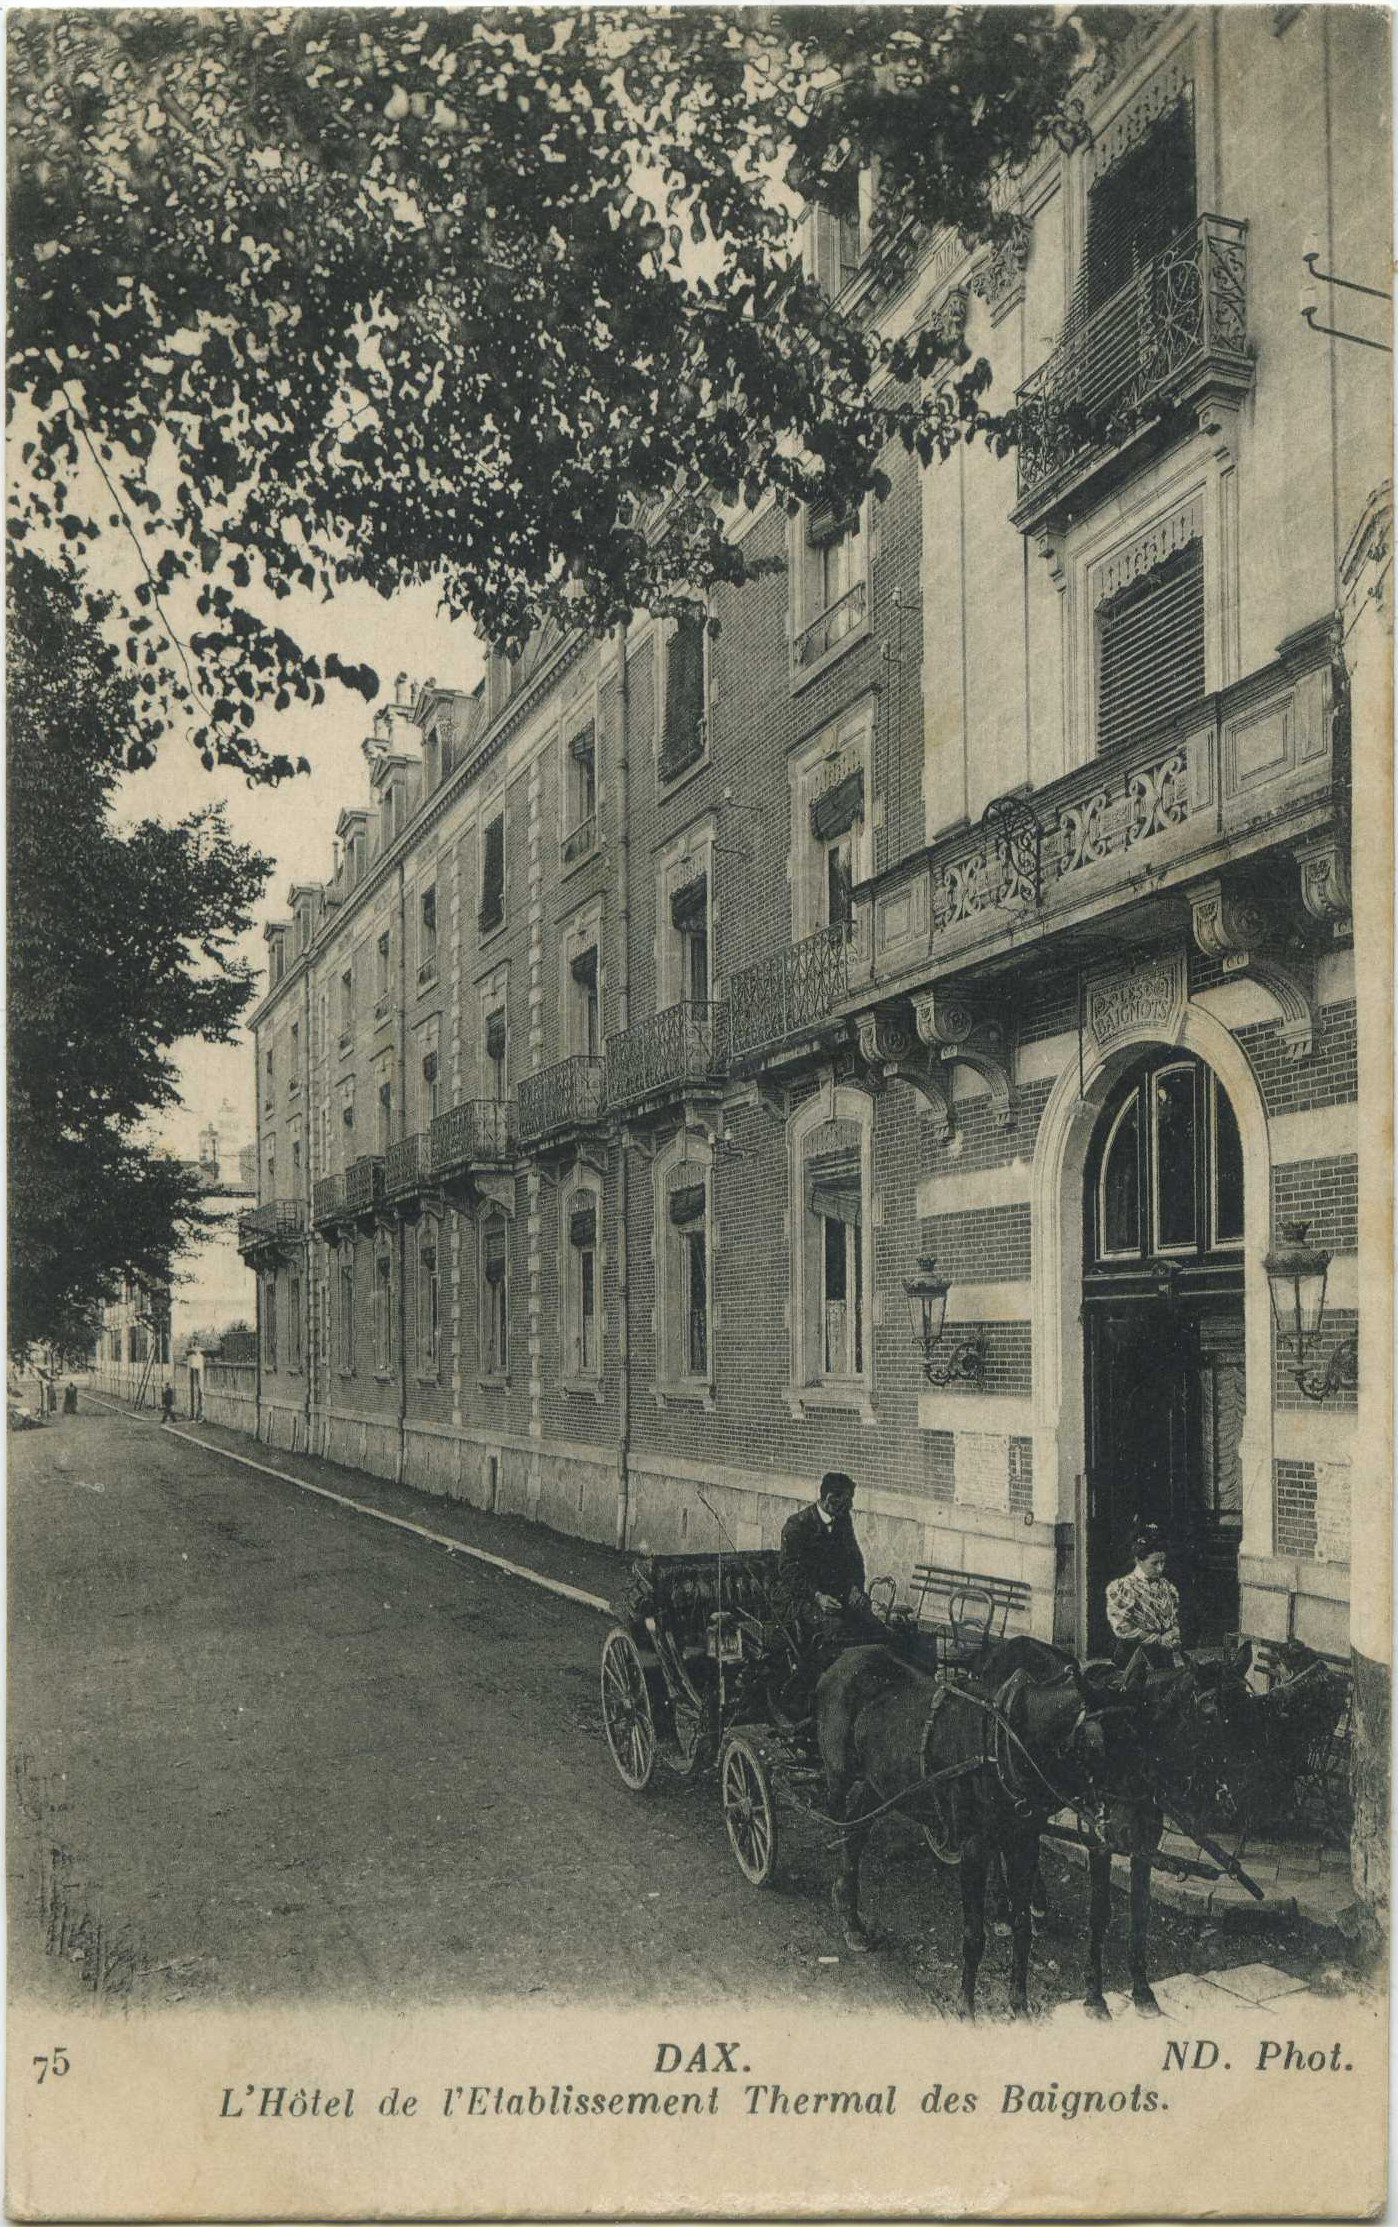 Dax - L'Hôtel de l'Etablissement Thermal des Baignots.